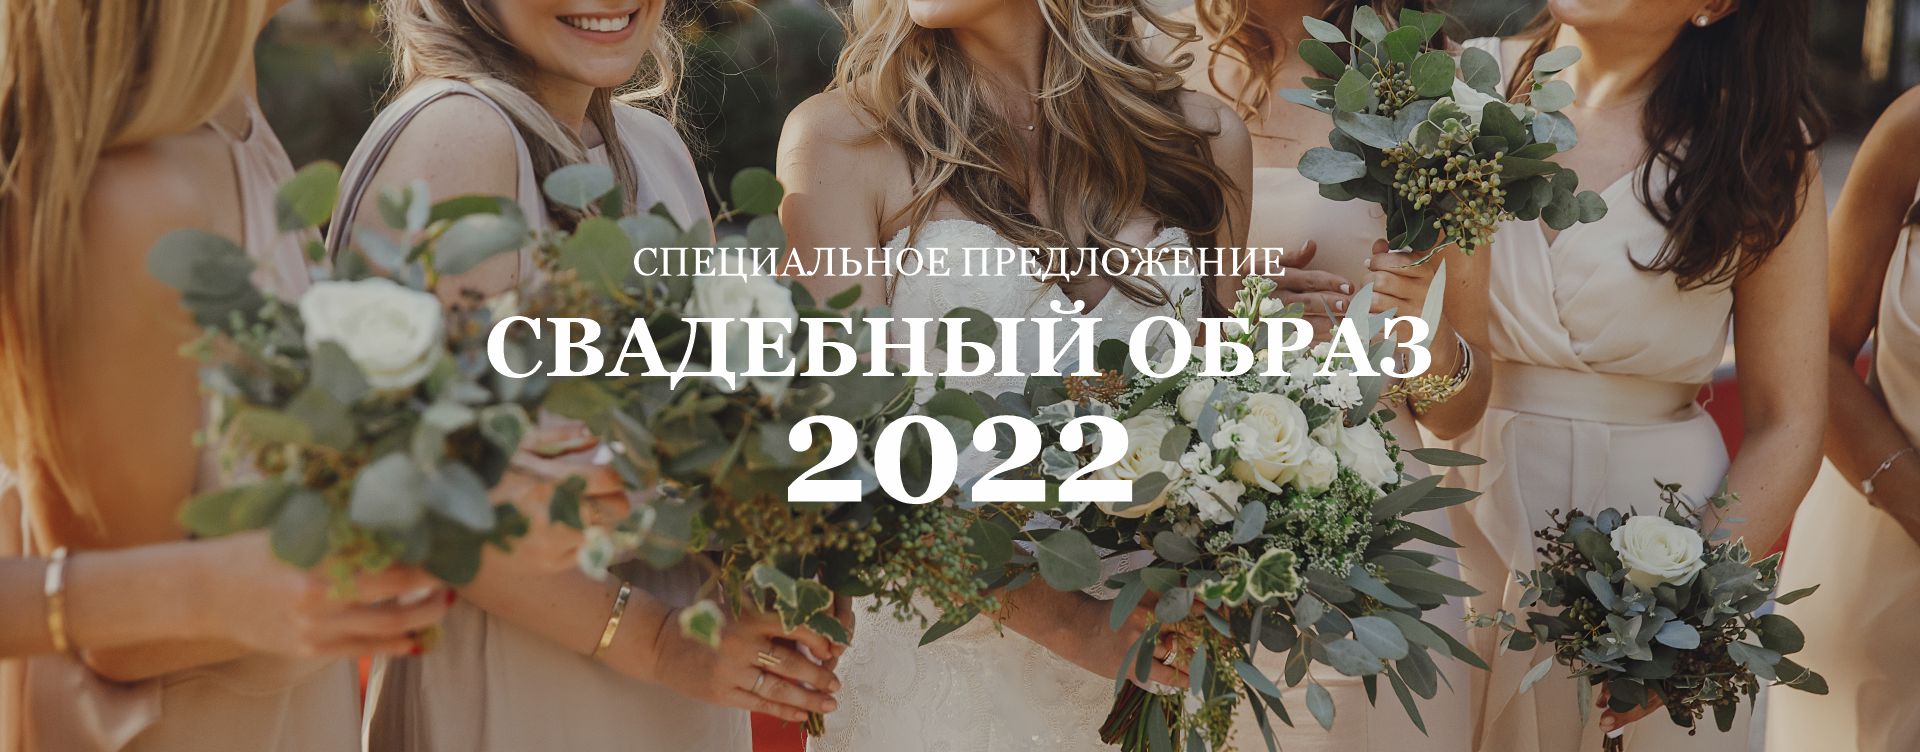 2022 svadebniy obraz